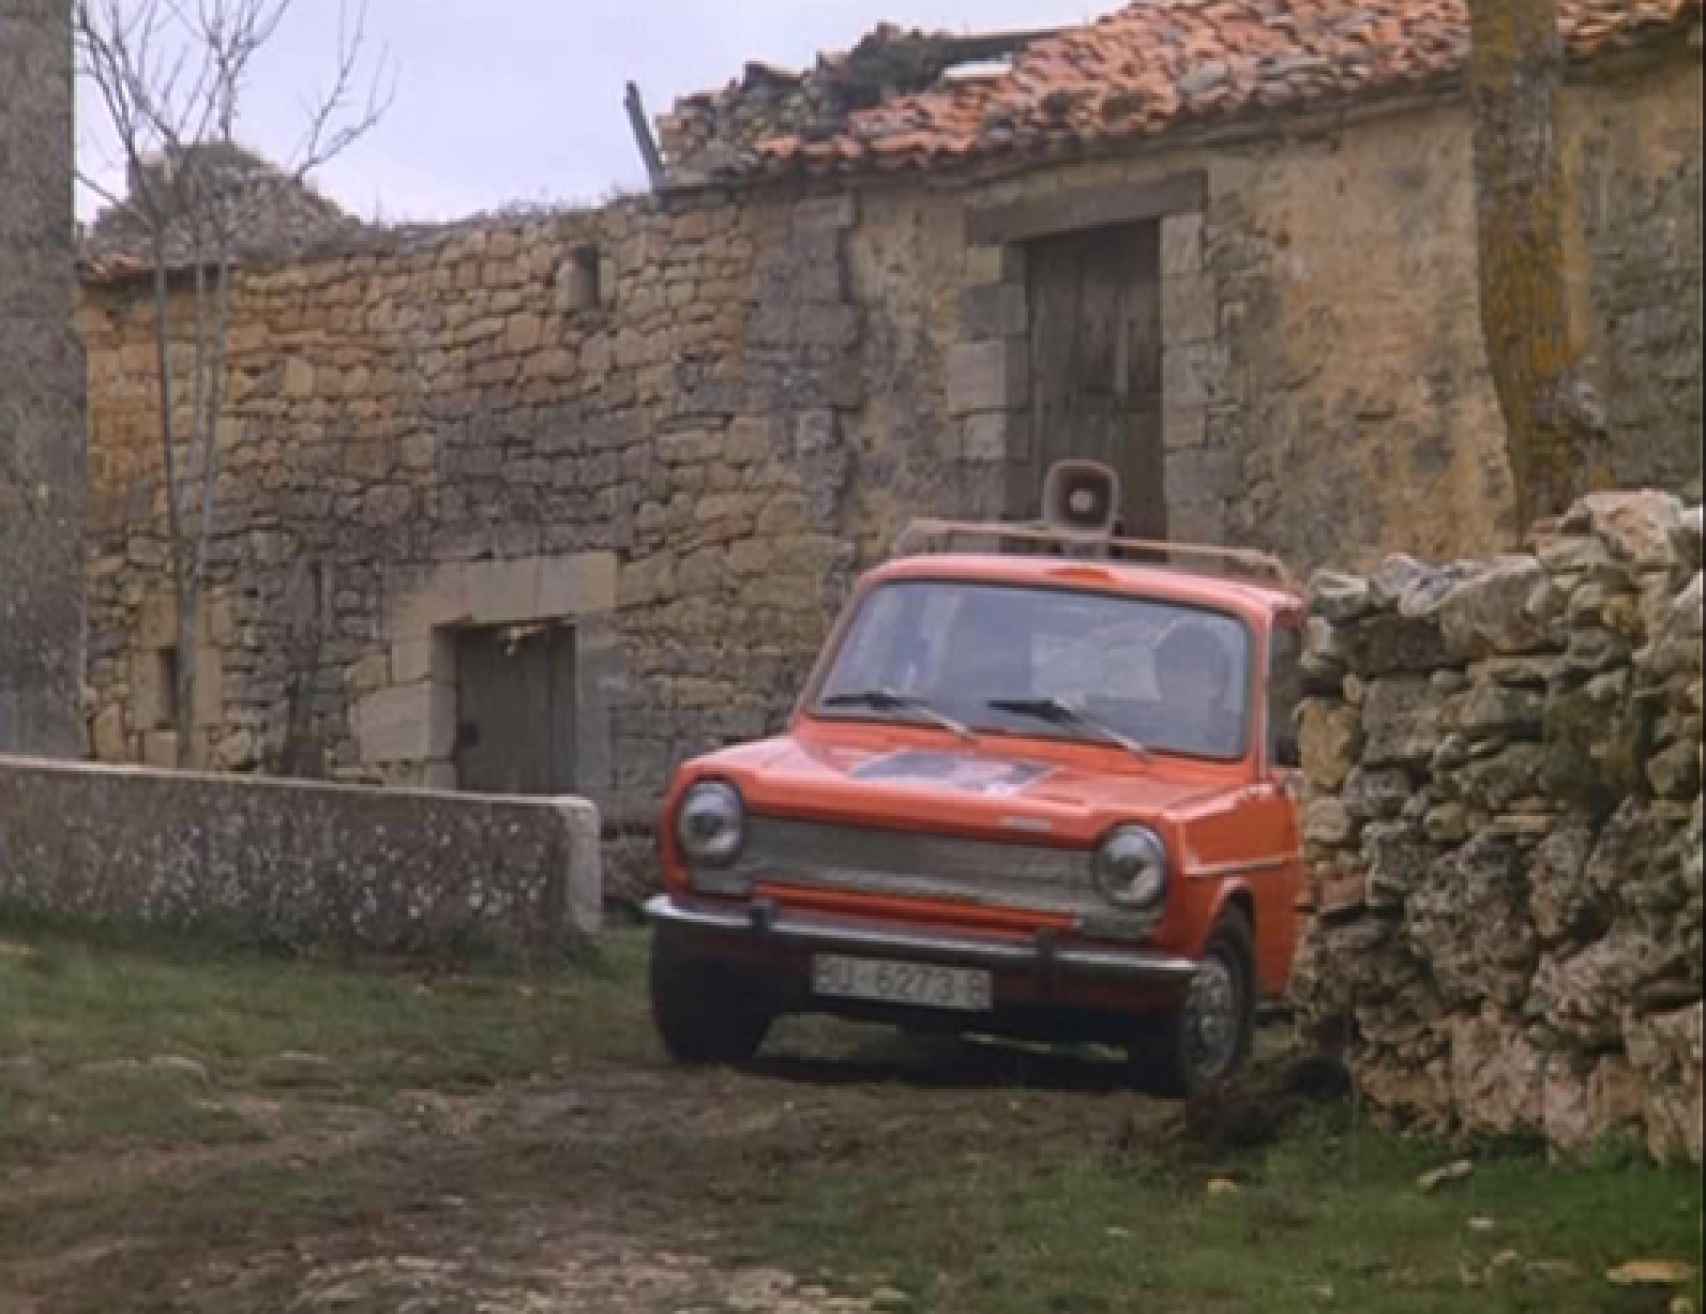 El coche que llevó la política a los pueblos, adaptado al cine en 1986.